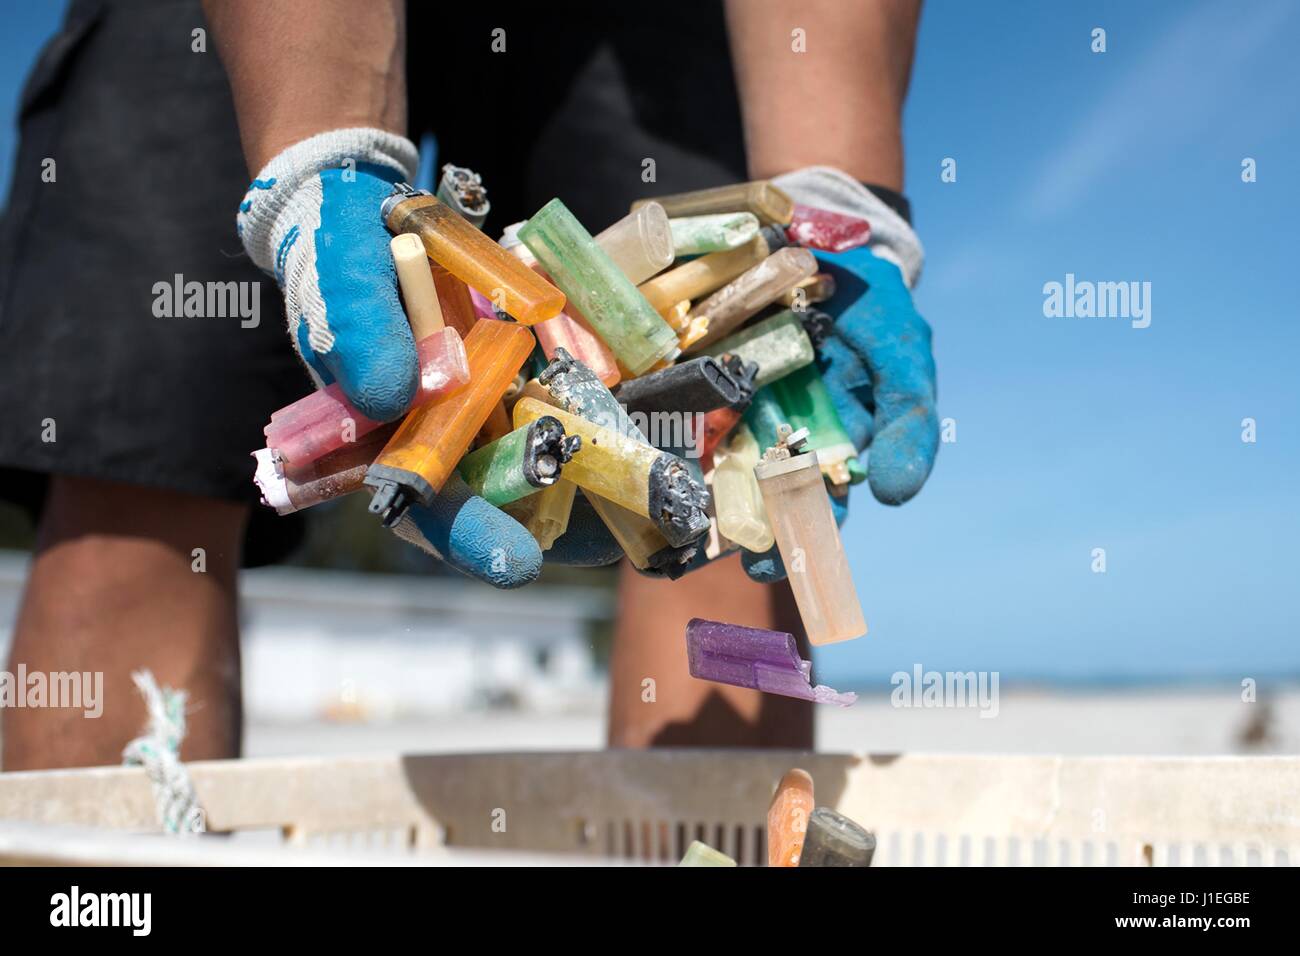 NOAA detriti marini volontari programma pick up in plastica e detriti marini si è incagliata Aprile 23, 2016 in Midway Atoll National Wildlife Refuge. Il NOAA detriti marini programma rimuove migliaia di sterline di rifiutare ogni anno dalle isole. Foto Stock